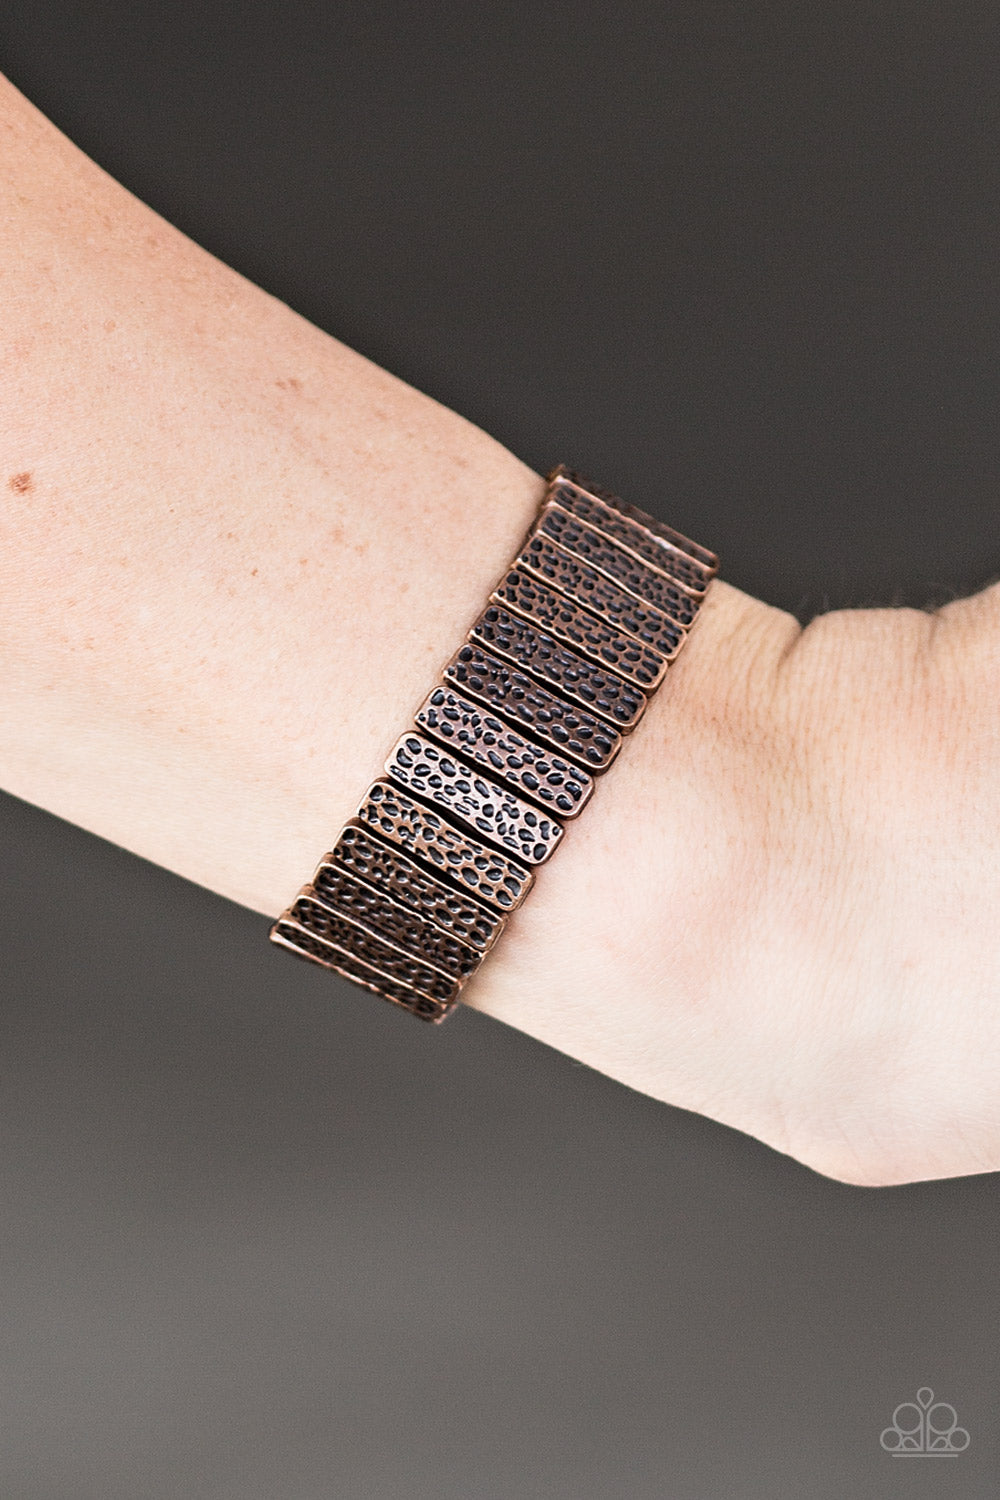 Cave Wear - Copper bracelet